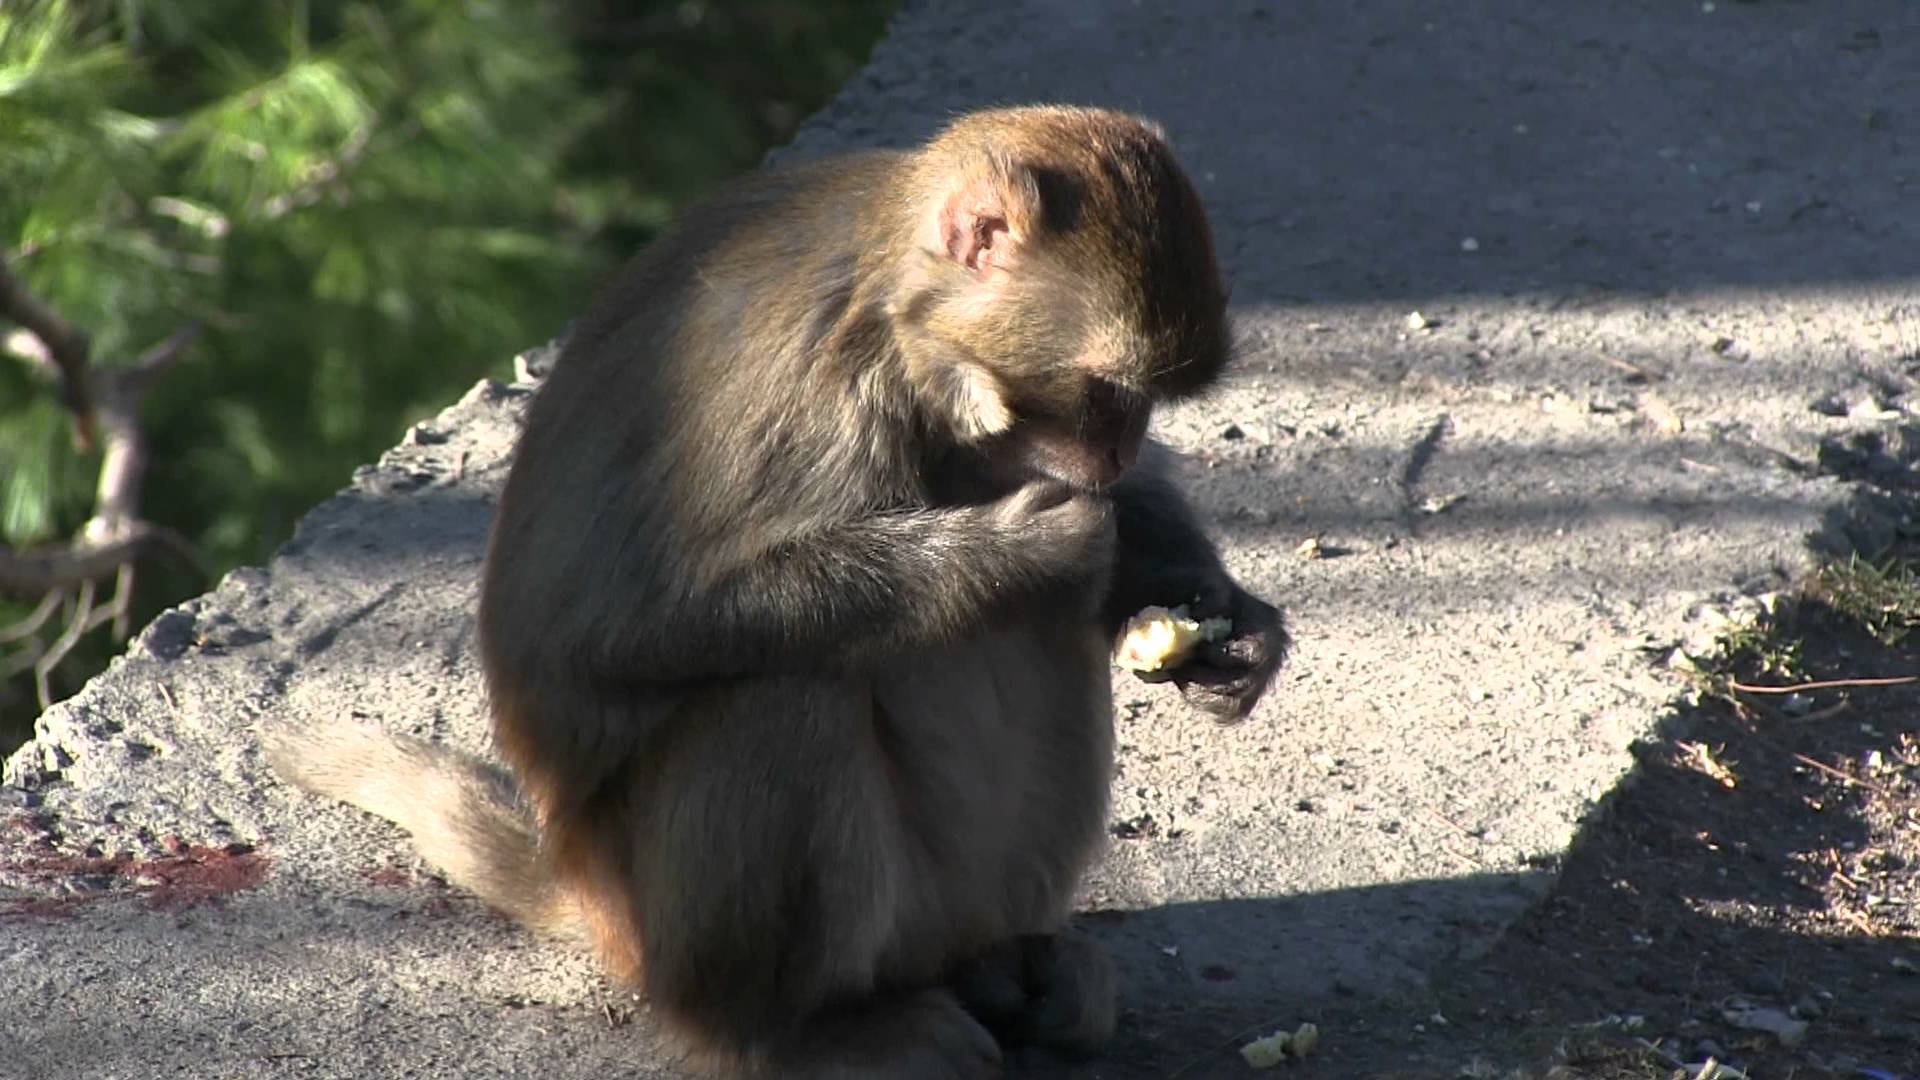 Wild Monkeys in Pakistan - YouTube